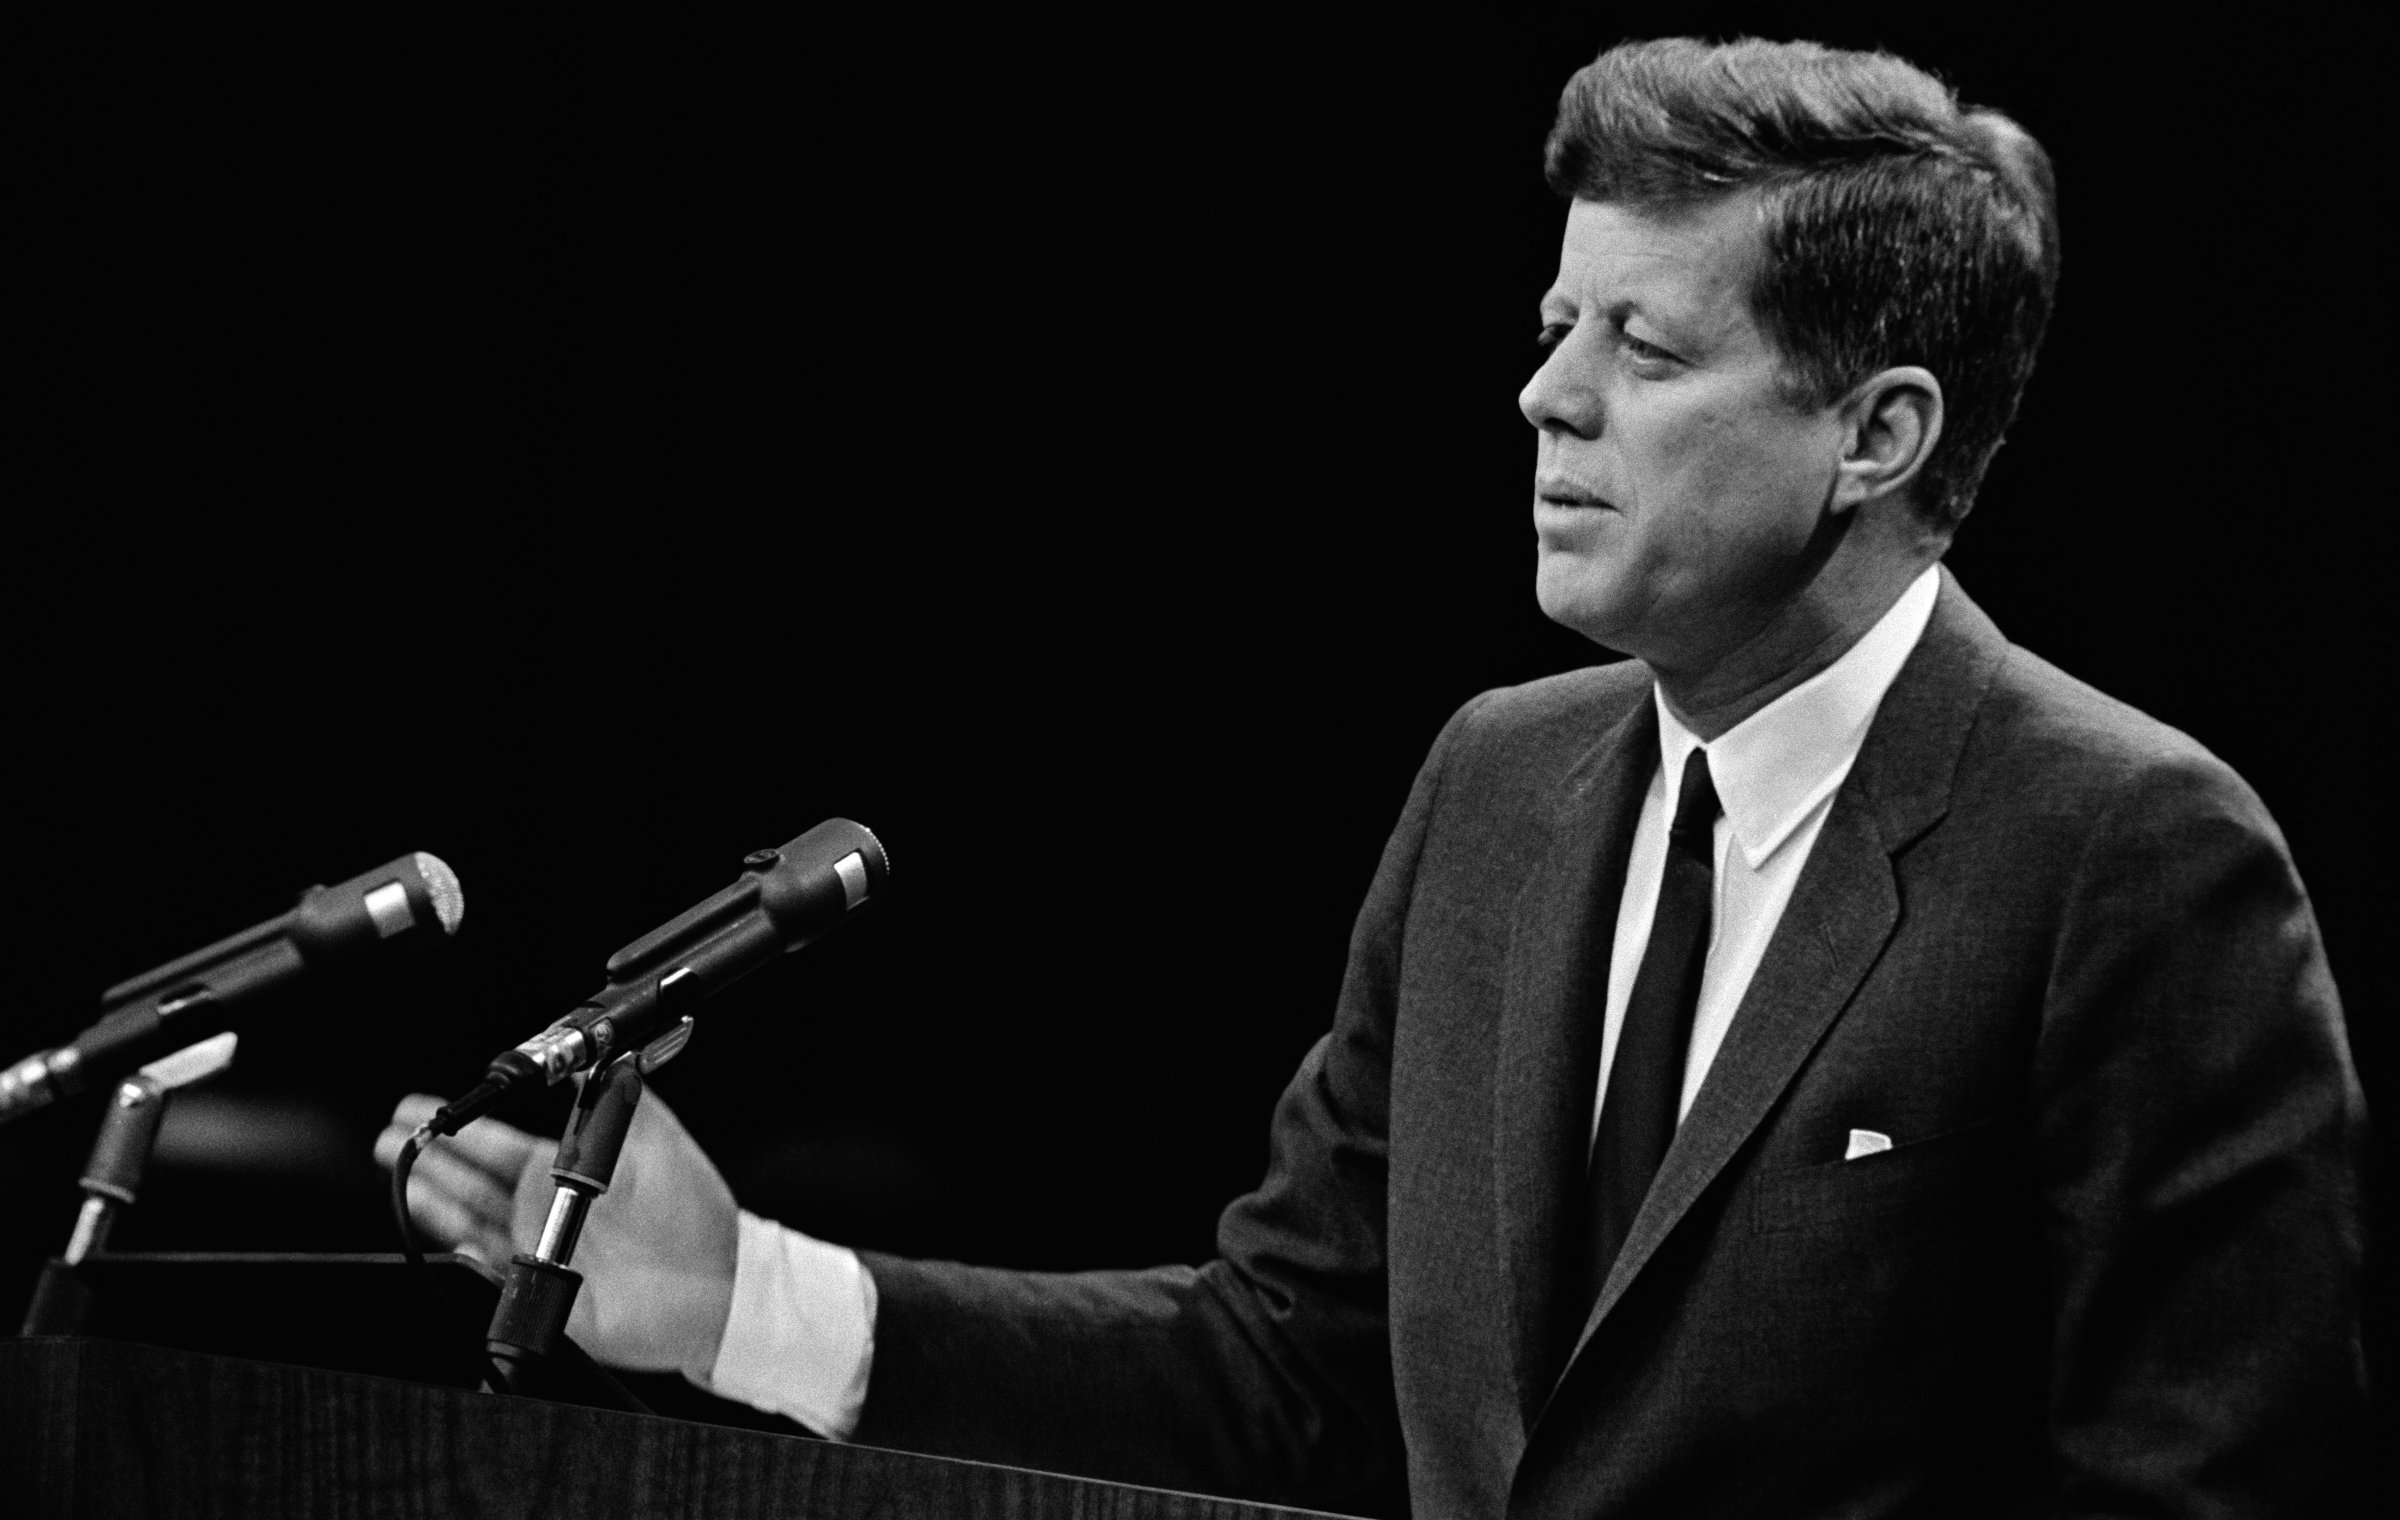 US President John F. Kennedy's speech in 1963 in Washington D.C.